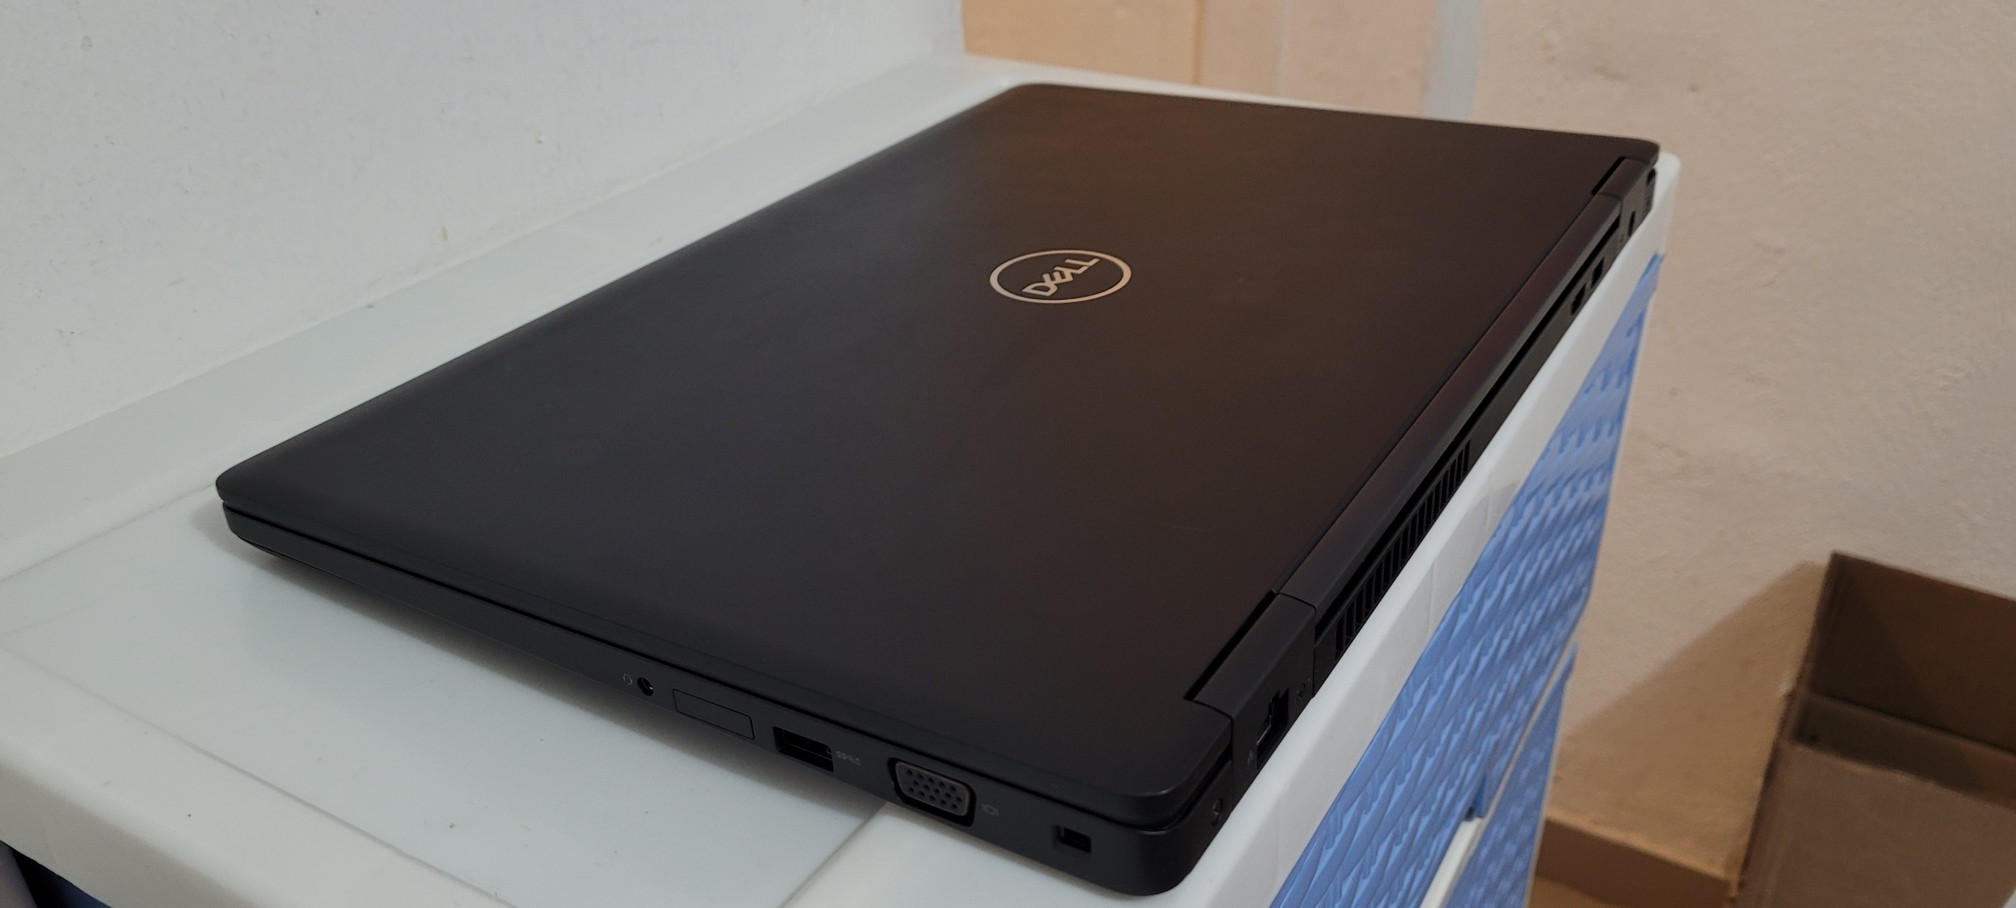 computadoras y laptops - laptop Dell 5580 17 Core i5 7ma Gen Ram 8gb ddr4 Disco 128gb SSD  Y 1000gb NEW 2